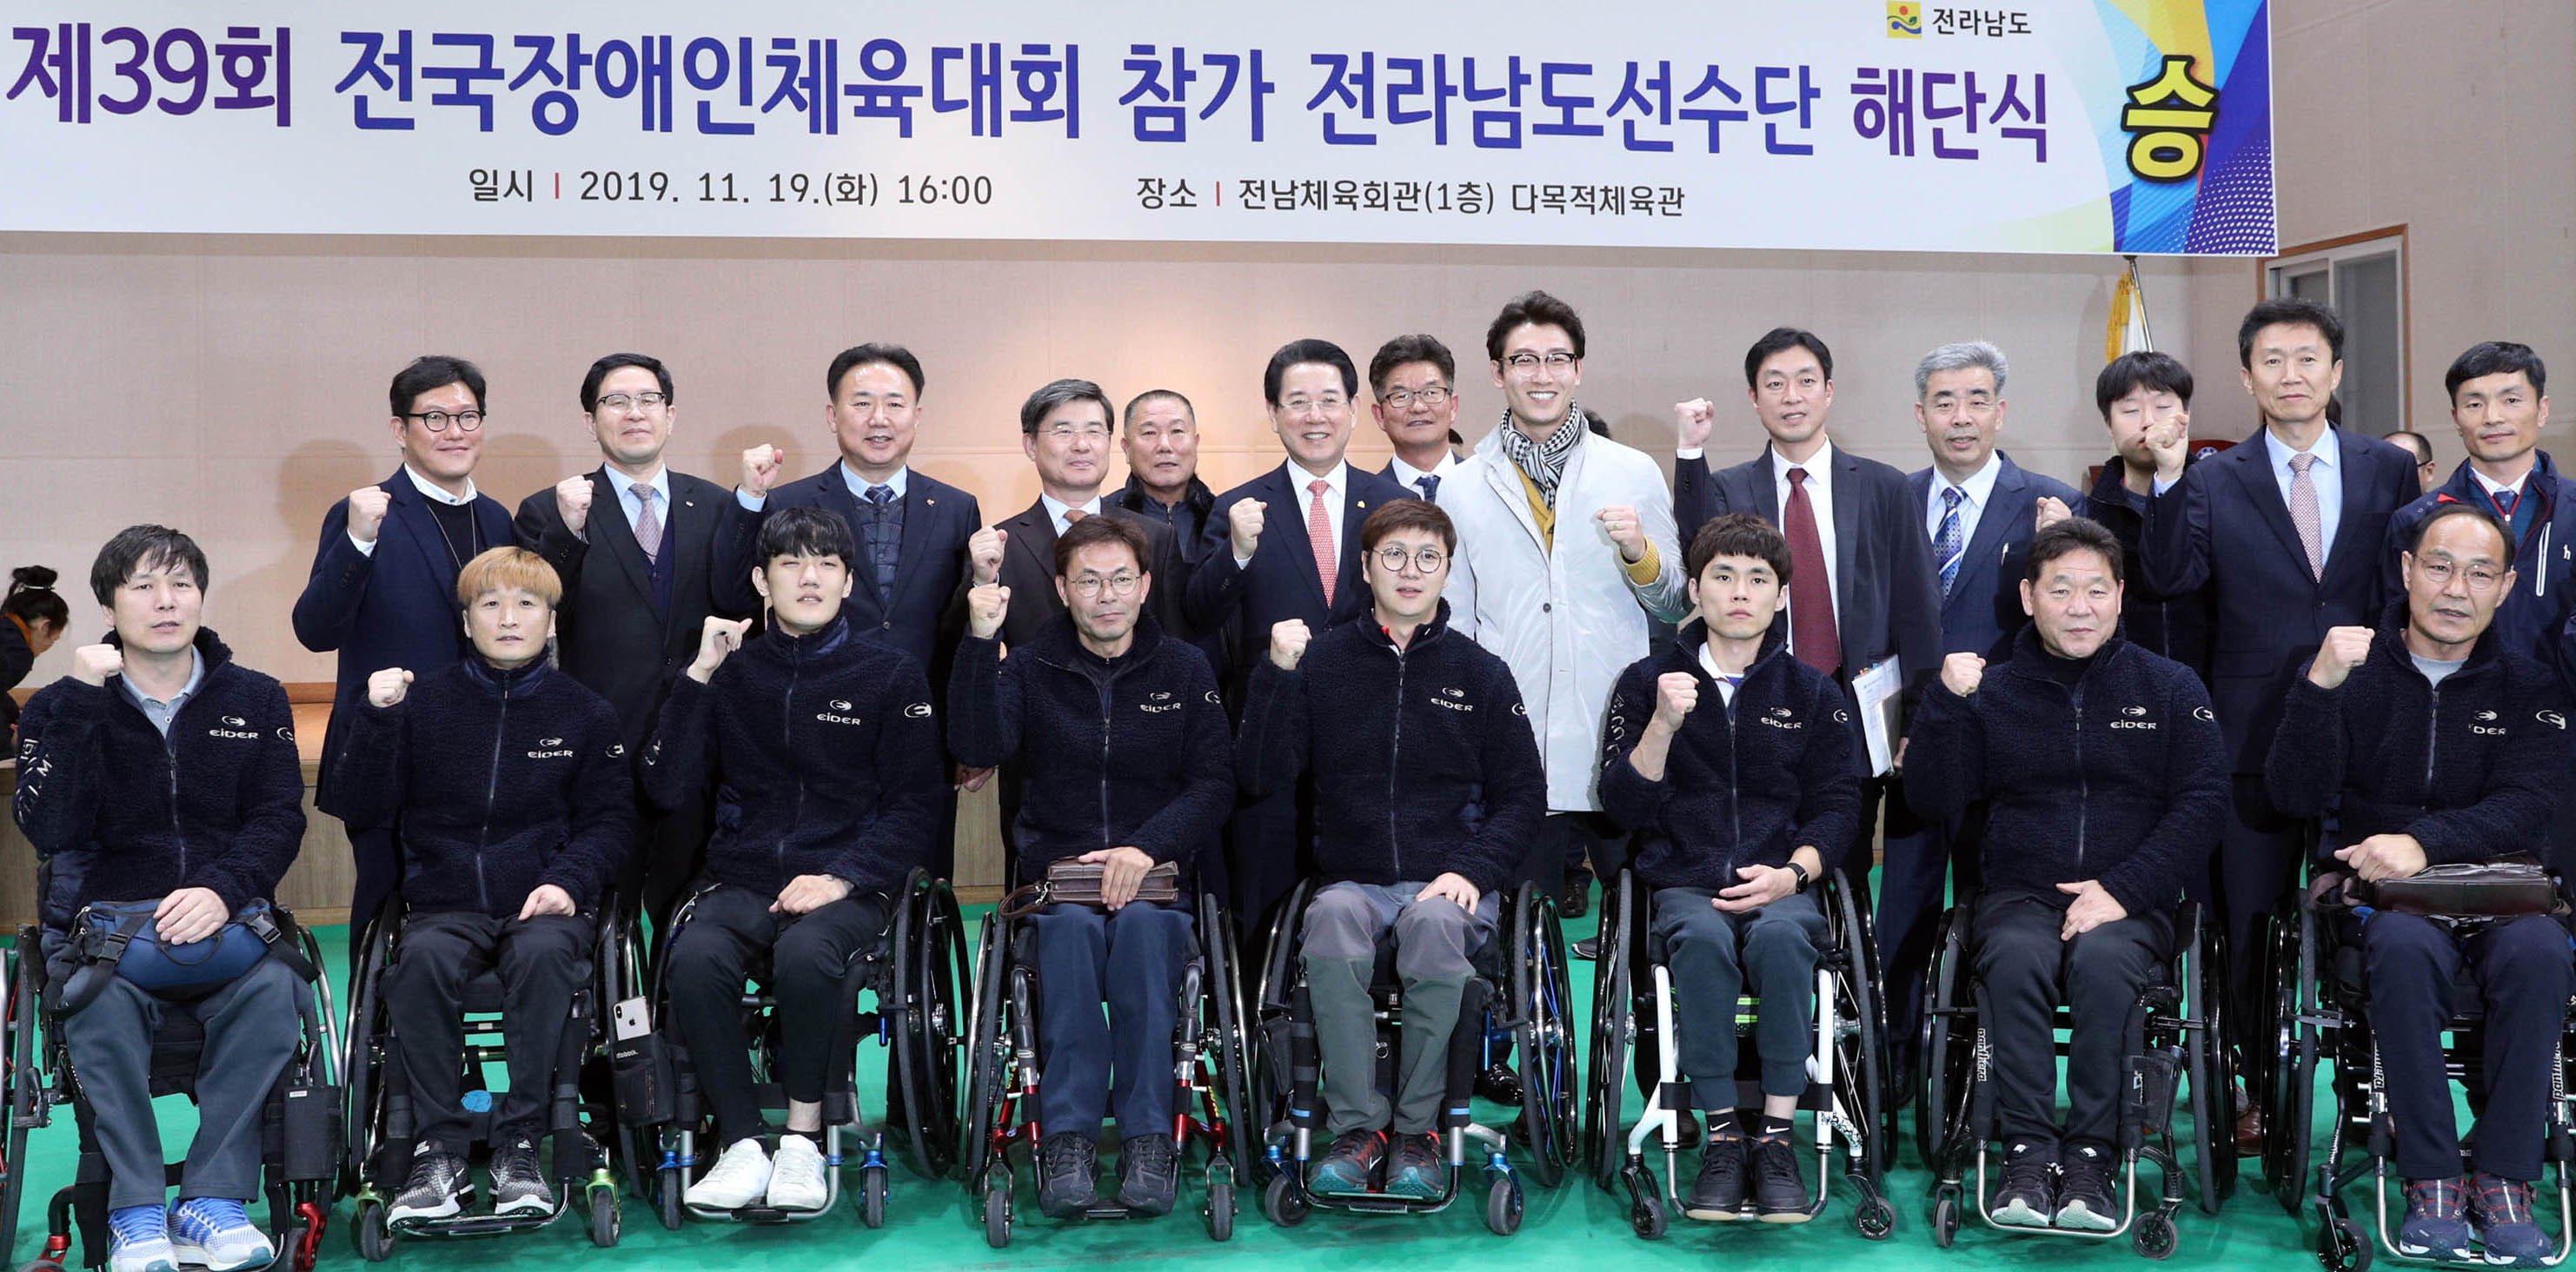 제39회 전국장애인체육대회 참가 전라남도선수단 해단식2